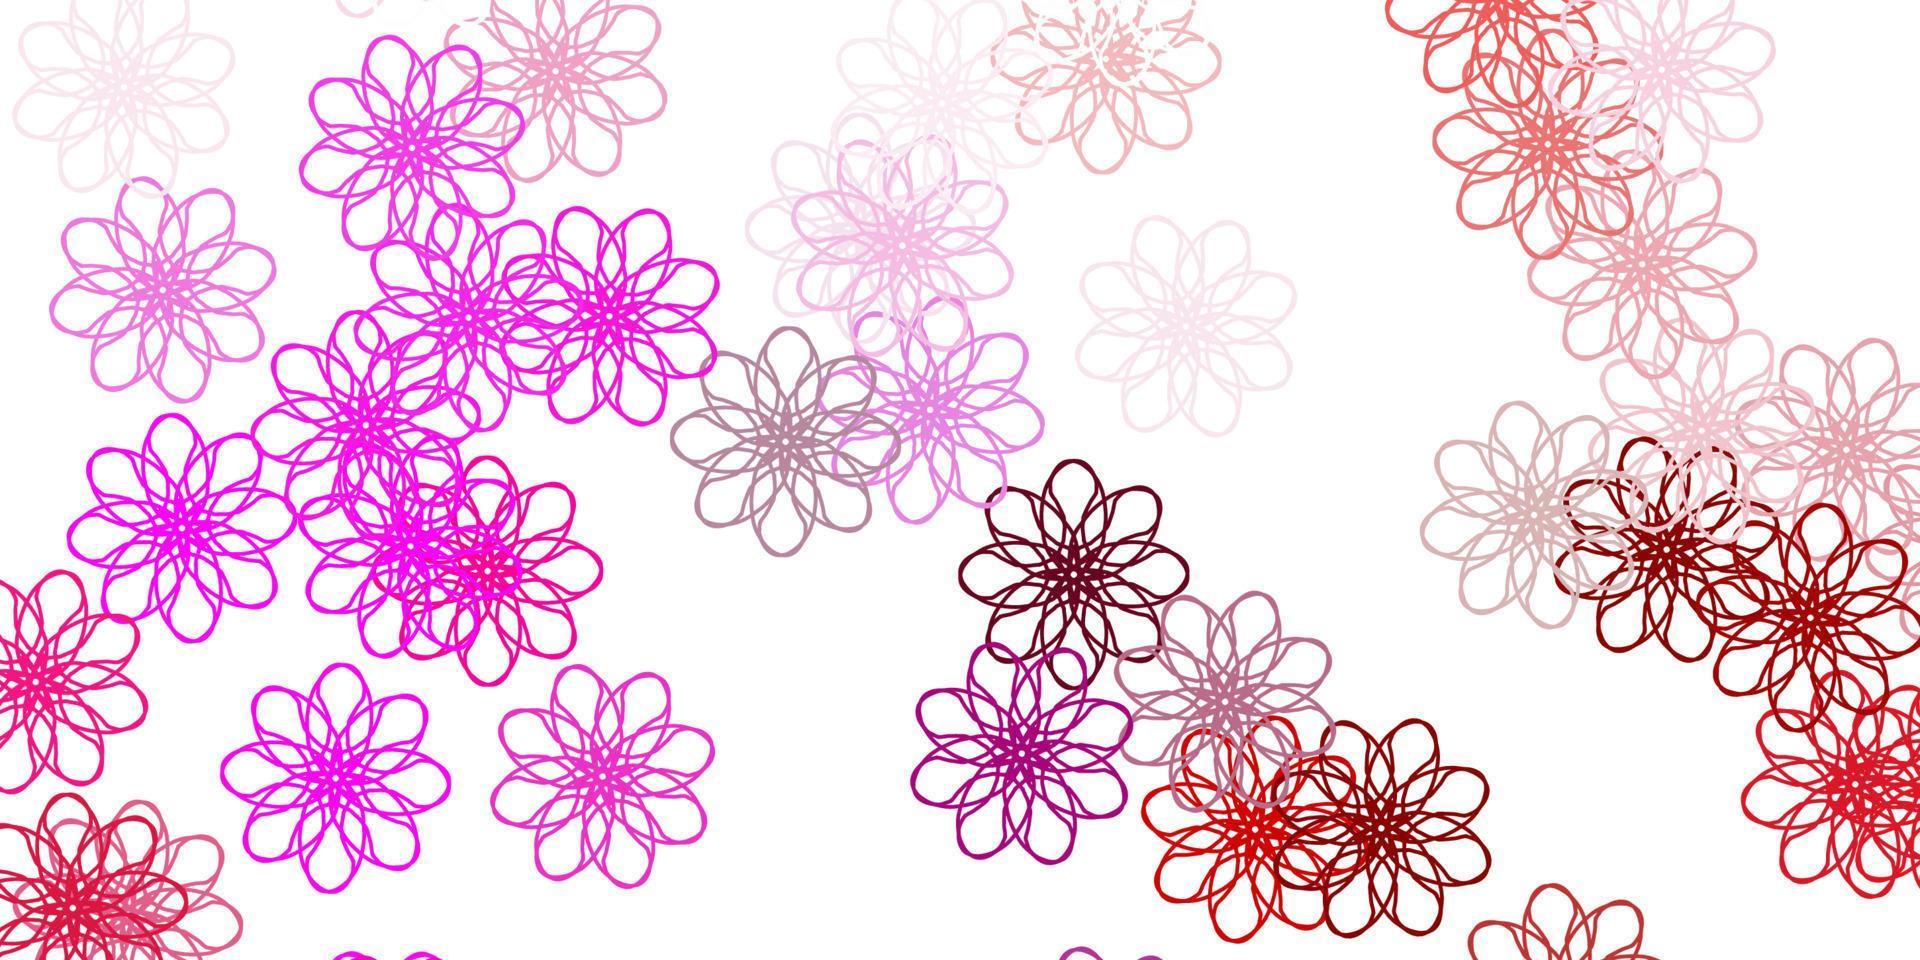 pano de fundo natural do vetor rosa claro roxo com flores